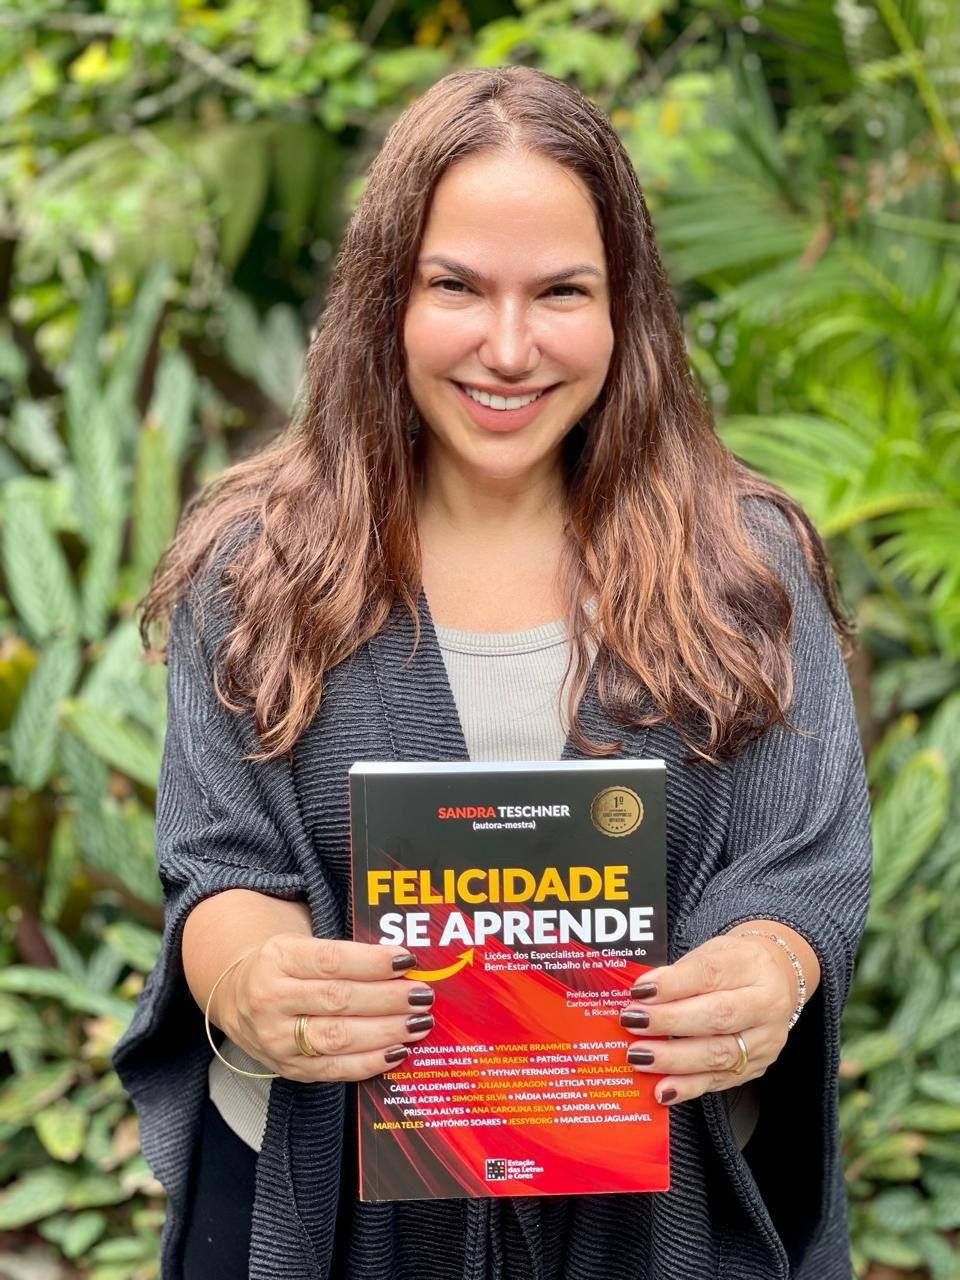 Sandra Teschner anuncia lançamento do livro “Felicidade se aprende” em Salvador